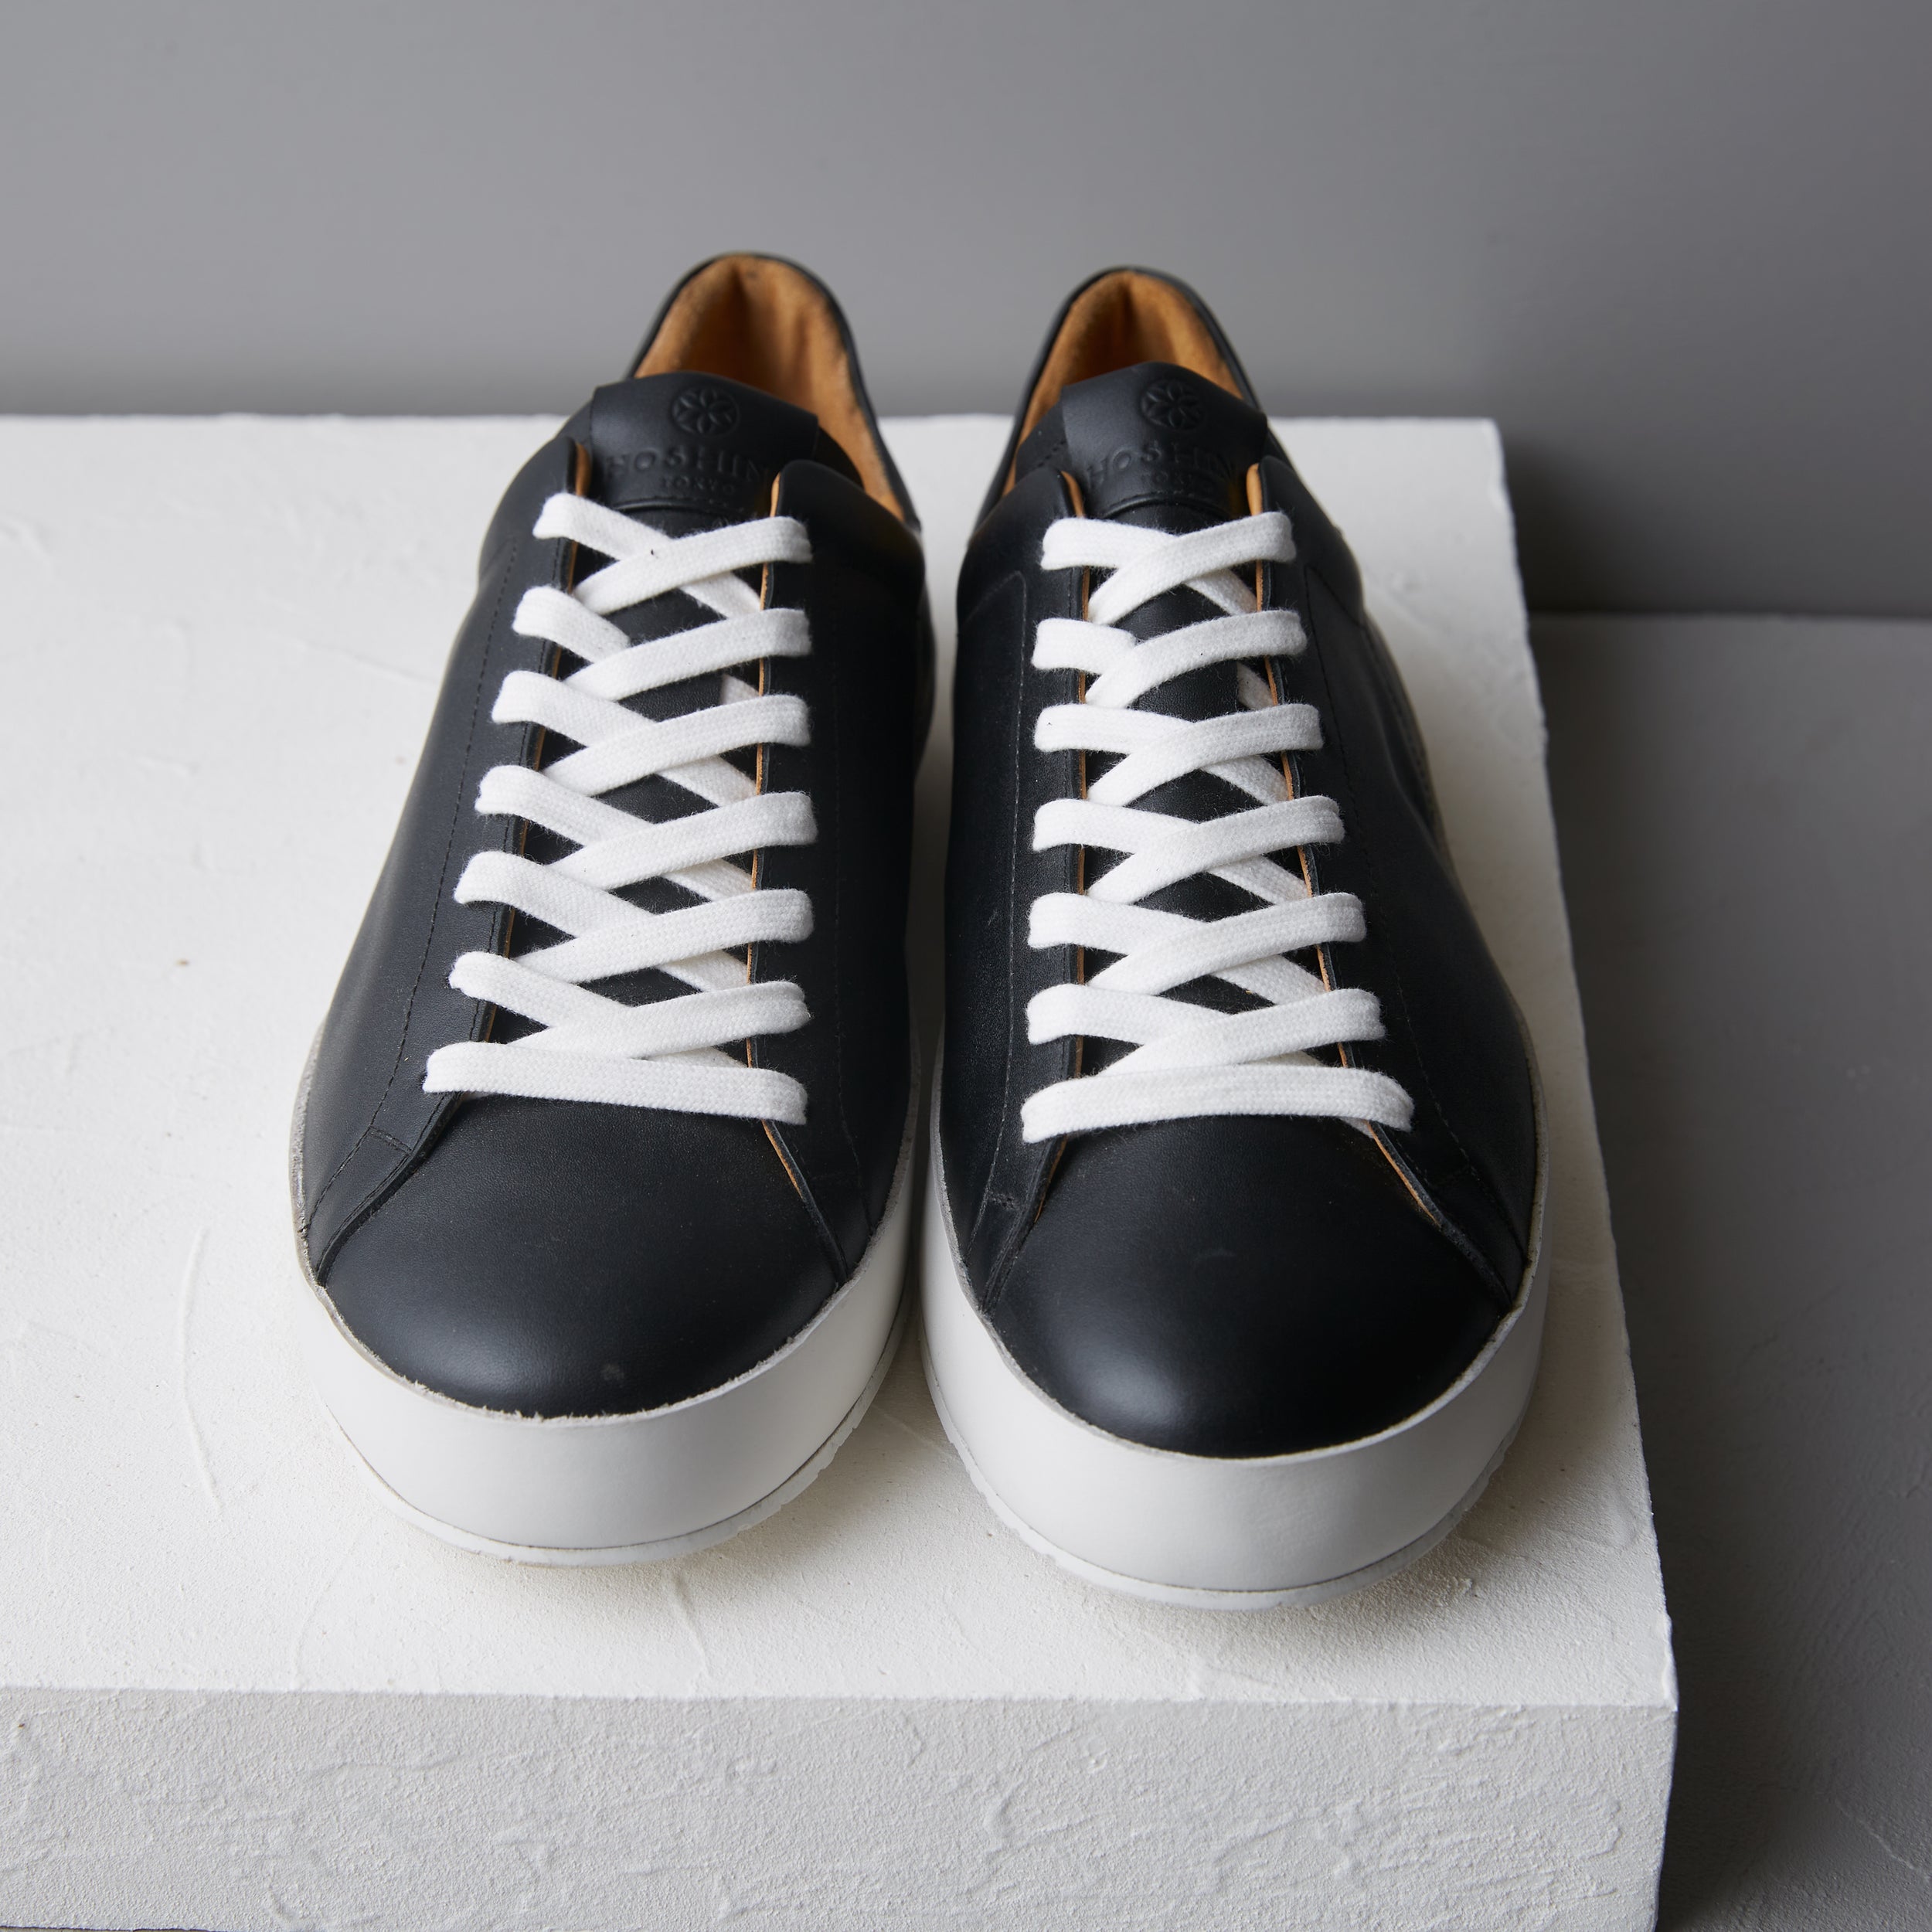 [men's] Liberte - low-top sneakers - black calfskin